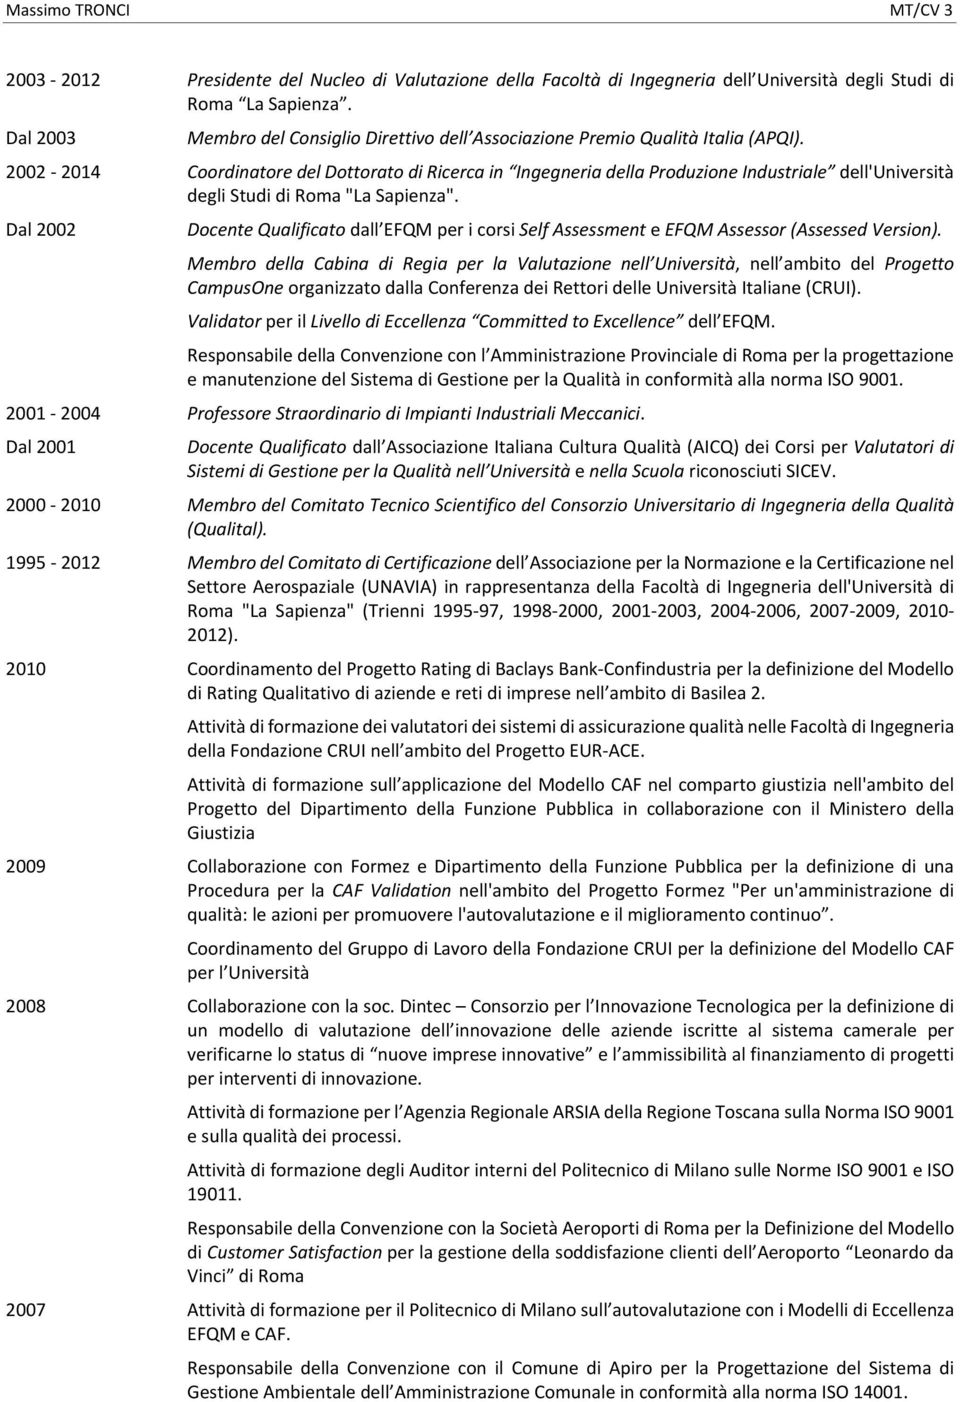 2002 2014 Coordinatore del Dottorato di Ricerca in Ingegneria della Produzione Industriale dell'università degli Studi di Roma "La Sapienza".